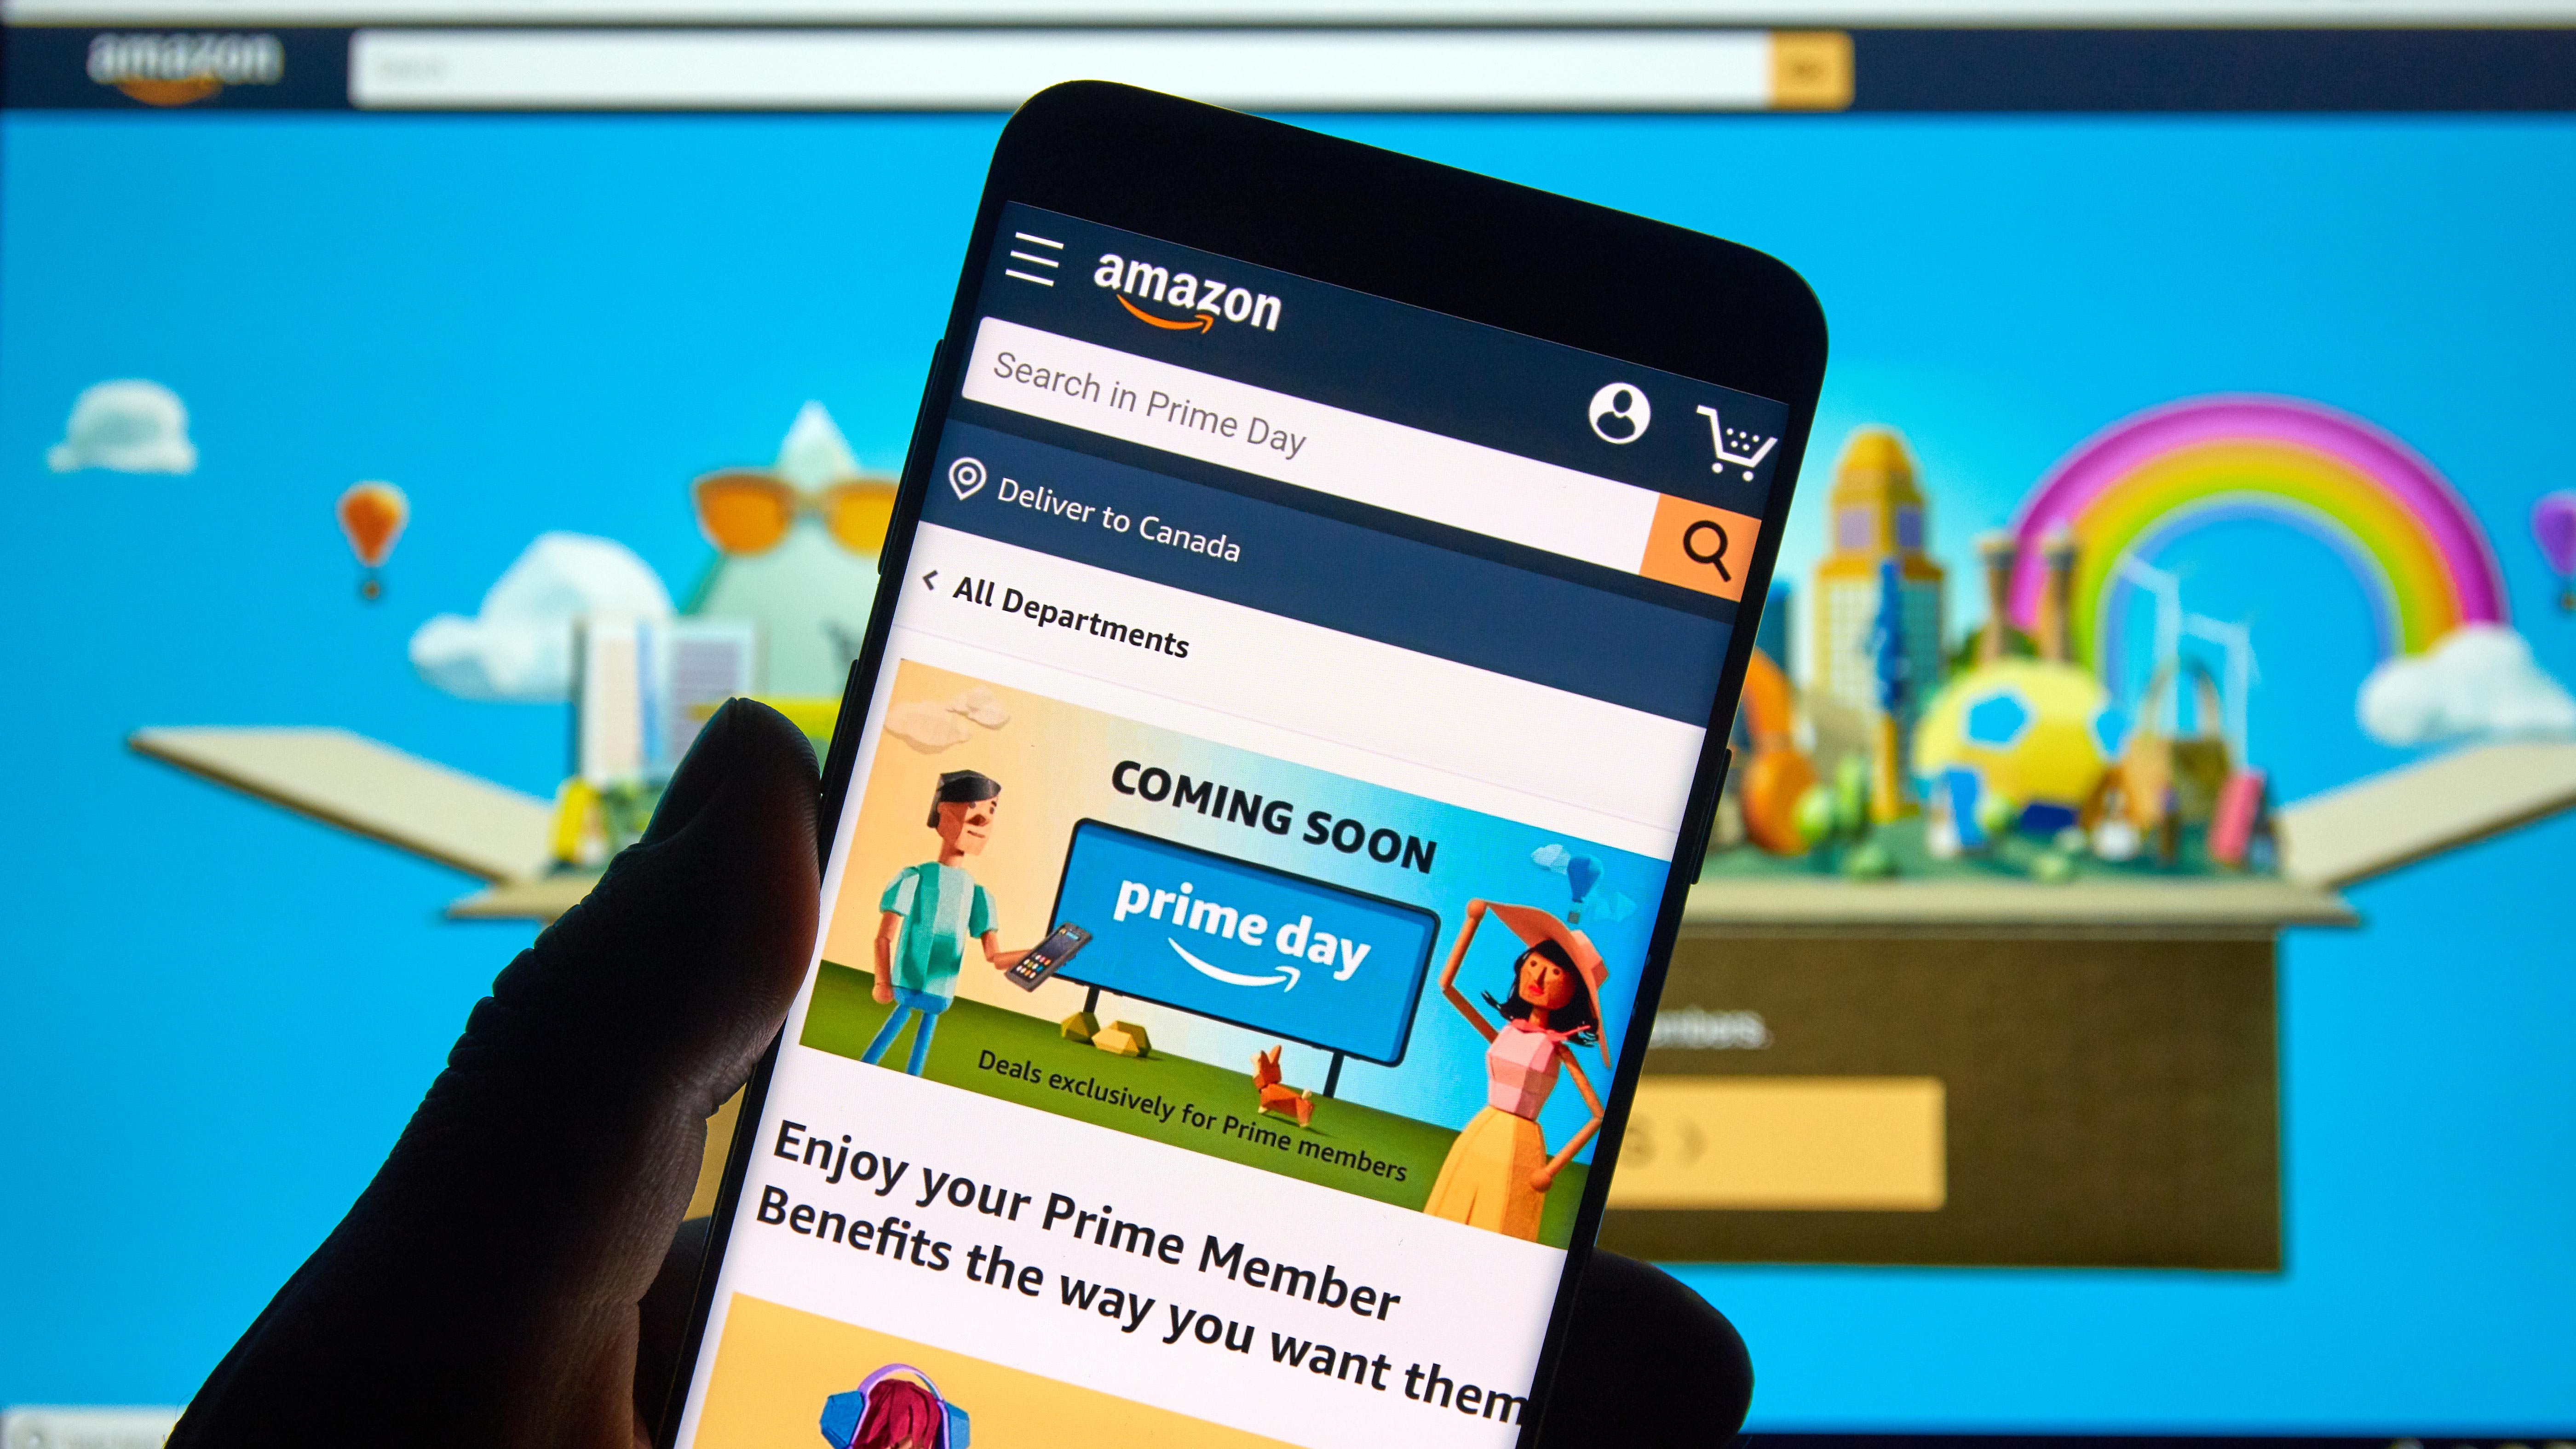 Persona sosteniendo un teléfono mirando la aplicación de Amazon, con un monitor detrás que muestra el sitio web de Amazon